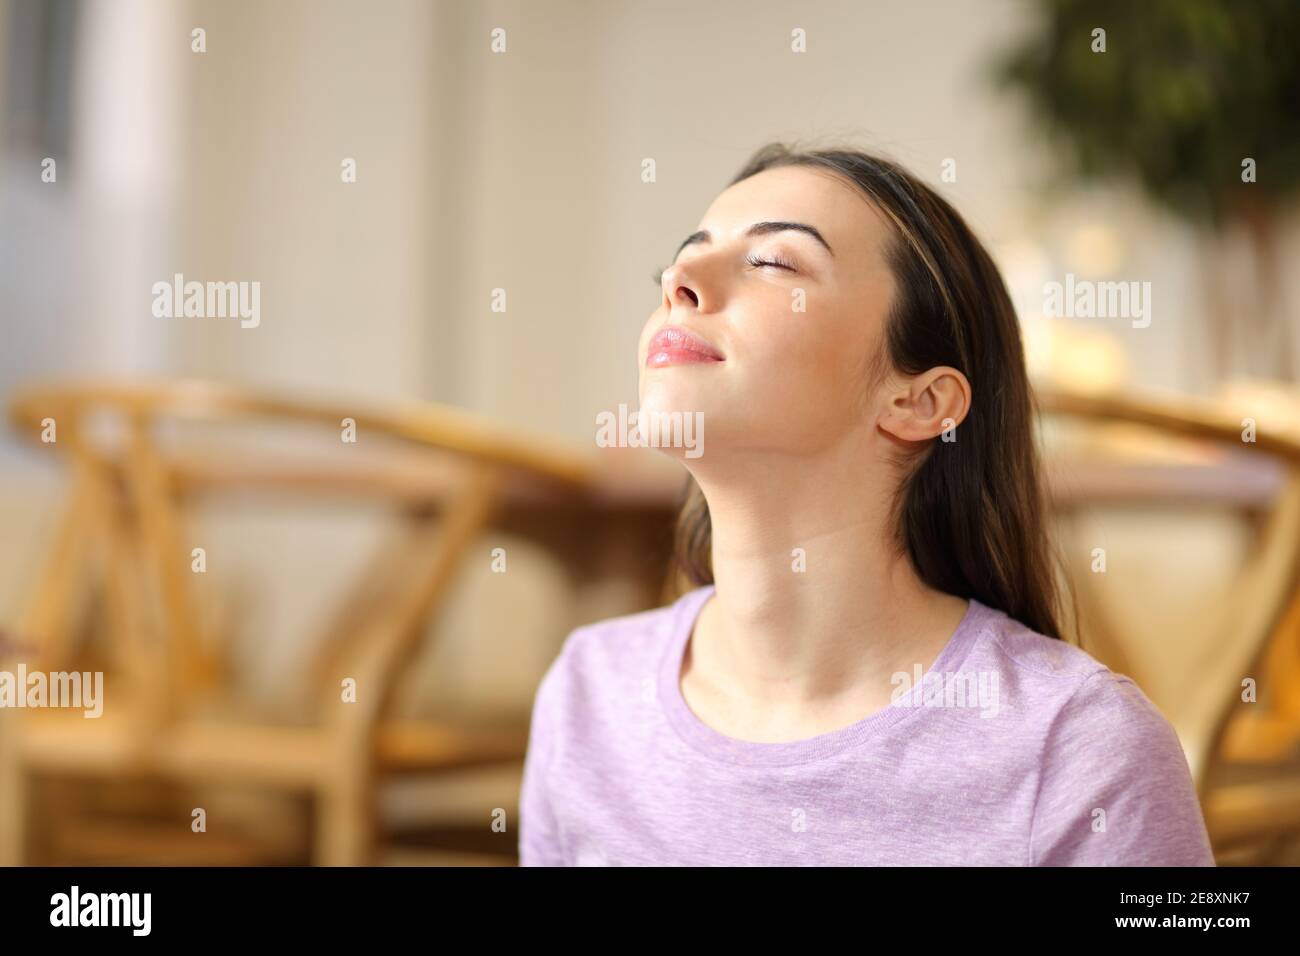 Une femme heureuse respirait de l'air frais et se détendant seule à la maison Banque D'Images